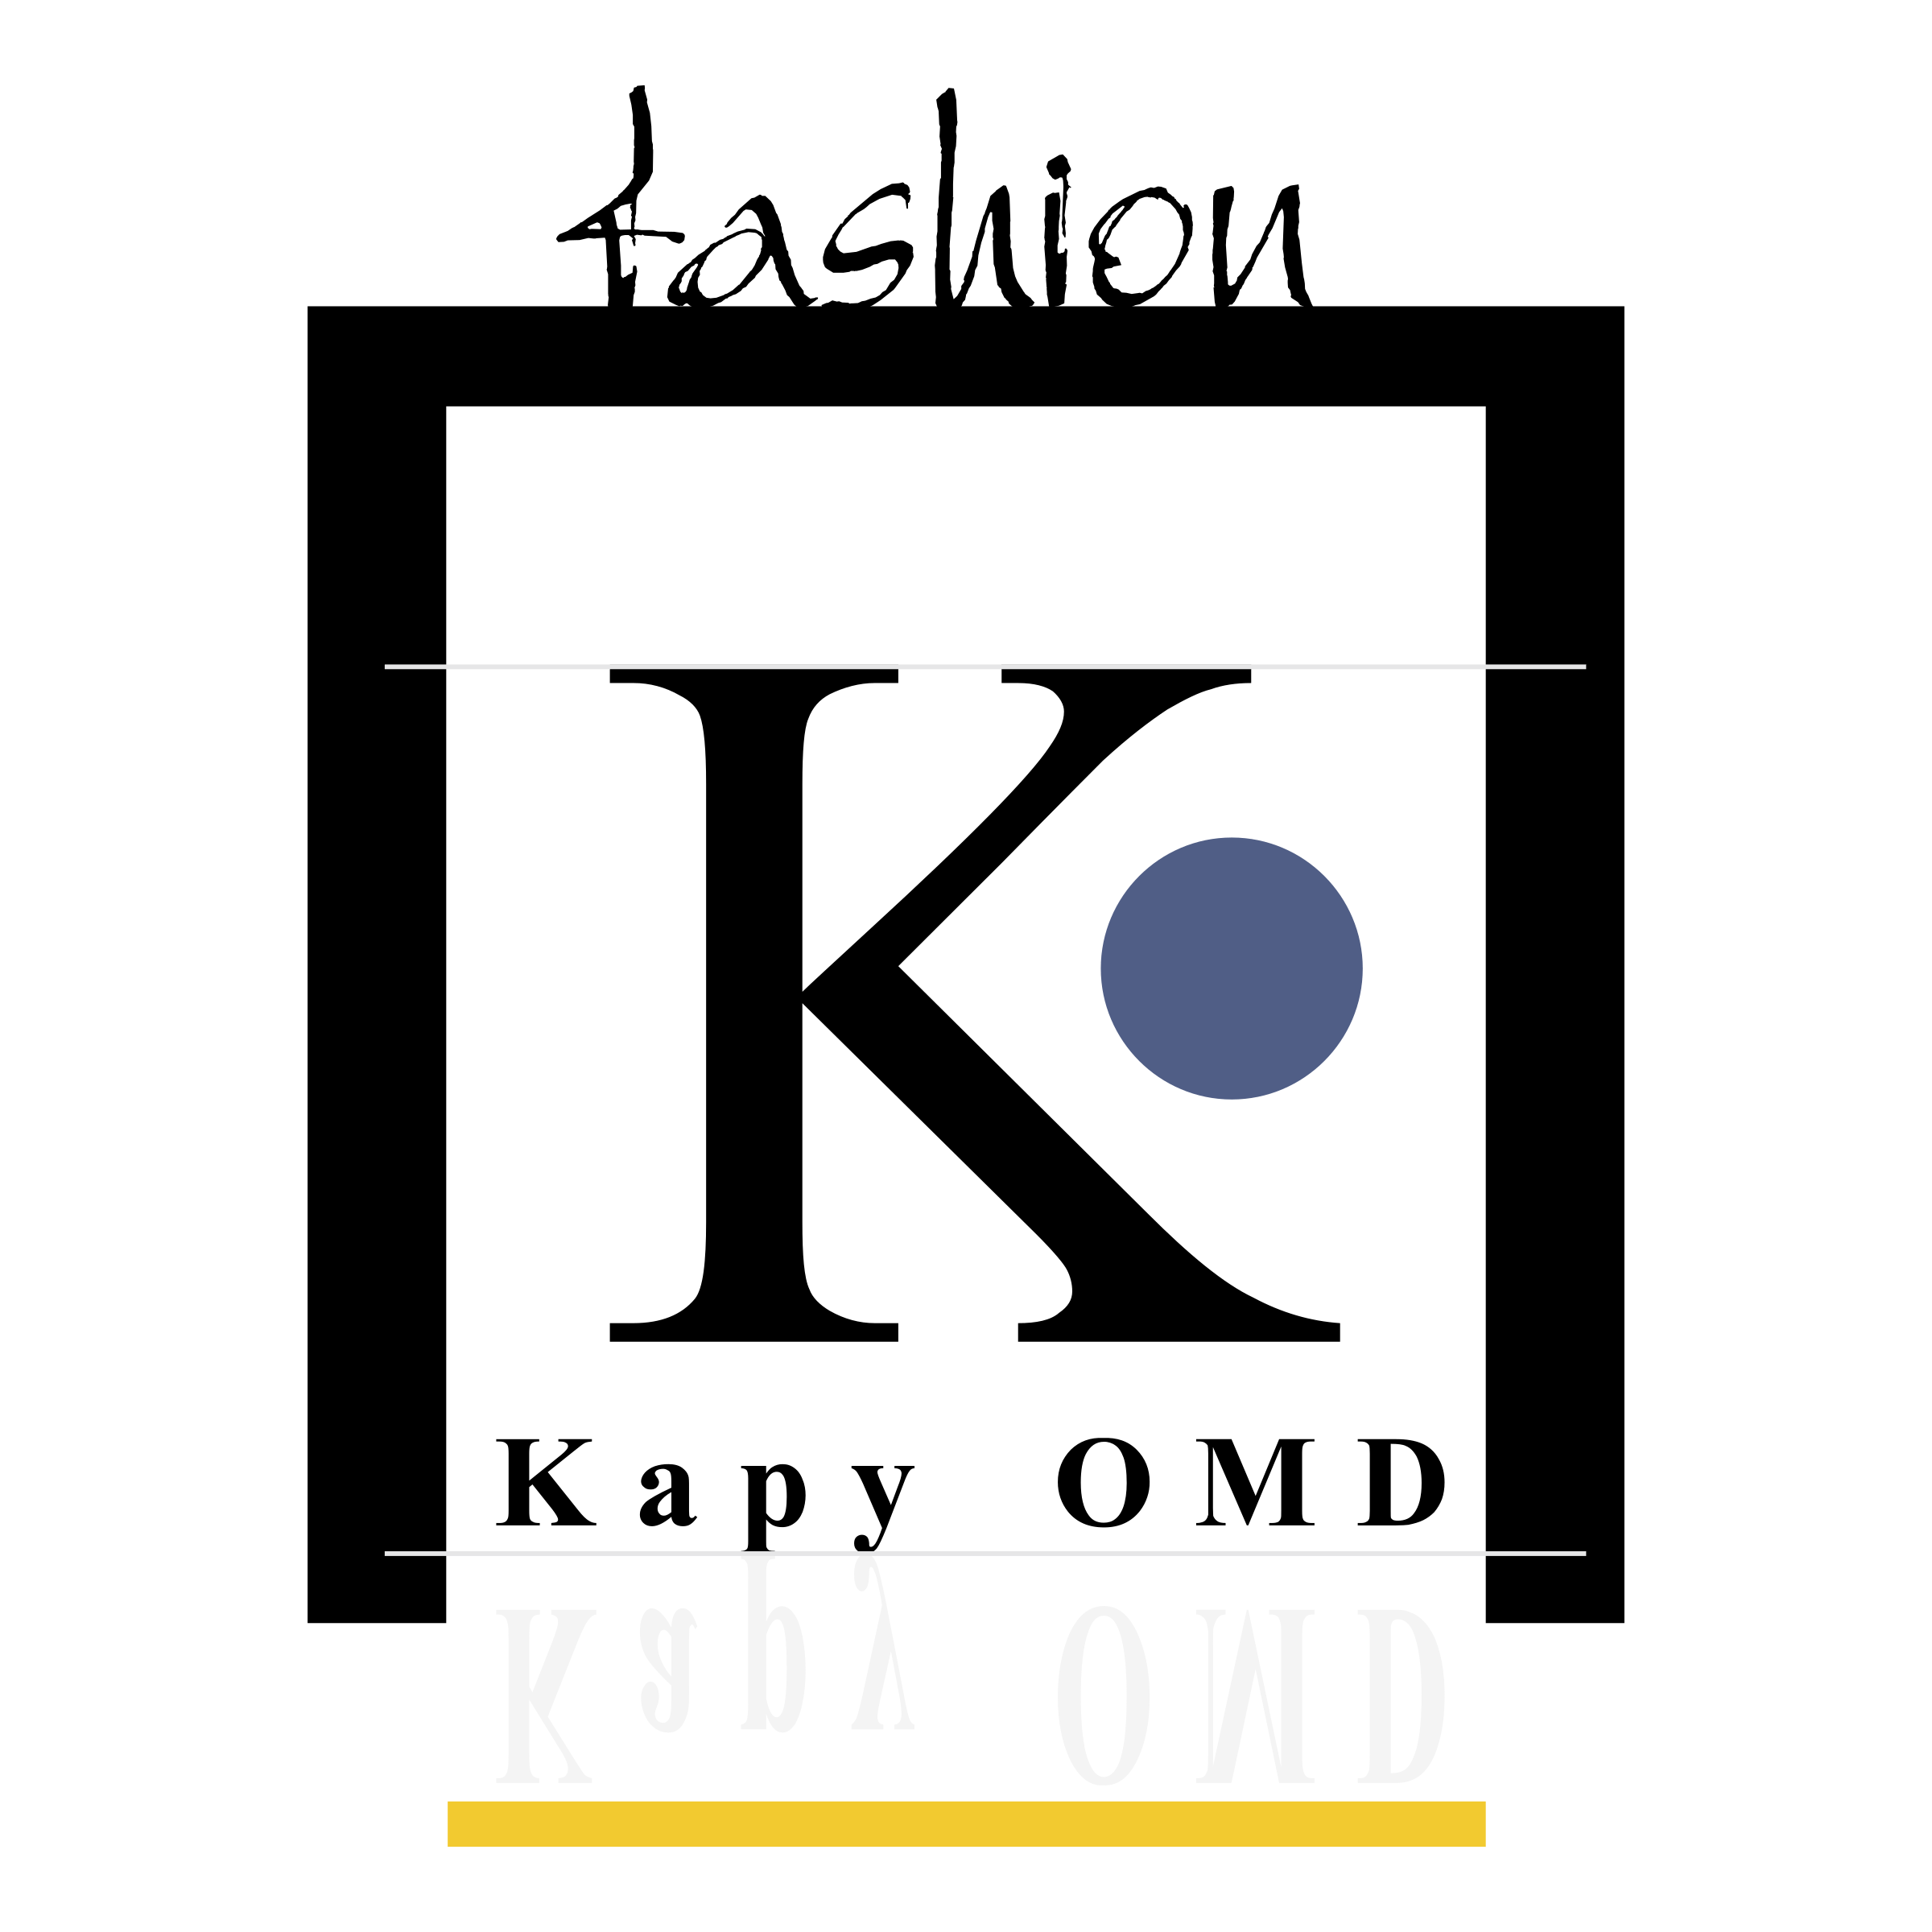 OMD Logo - Kapy OMD Logo PNG Transparent & SVG Vector - Freebie Supply